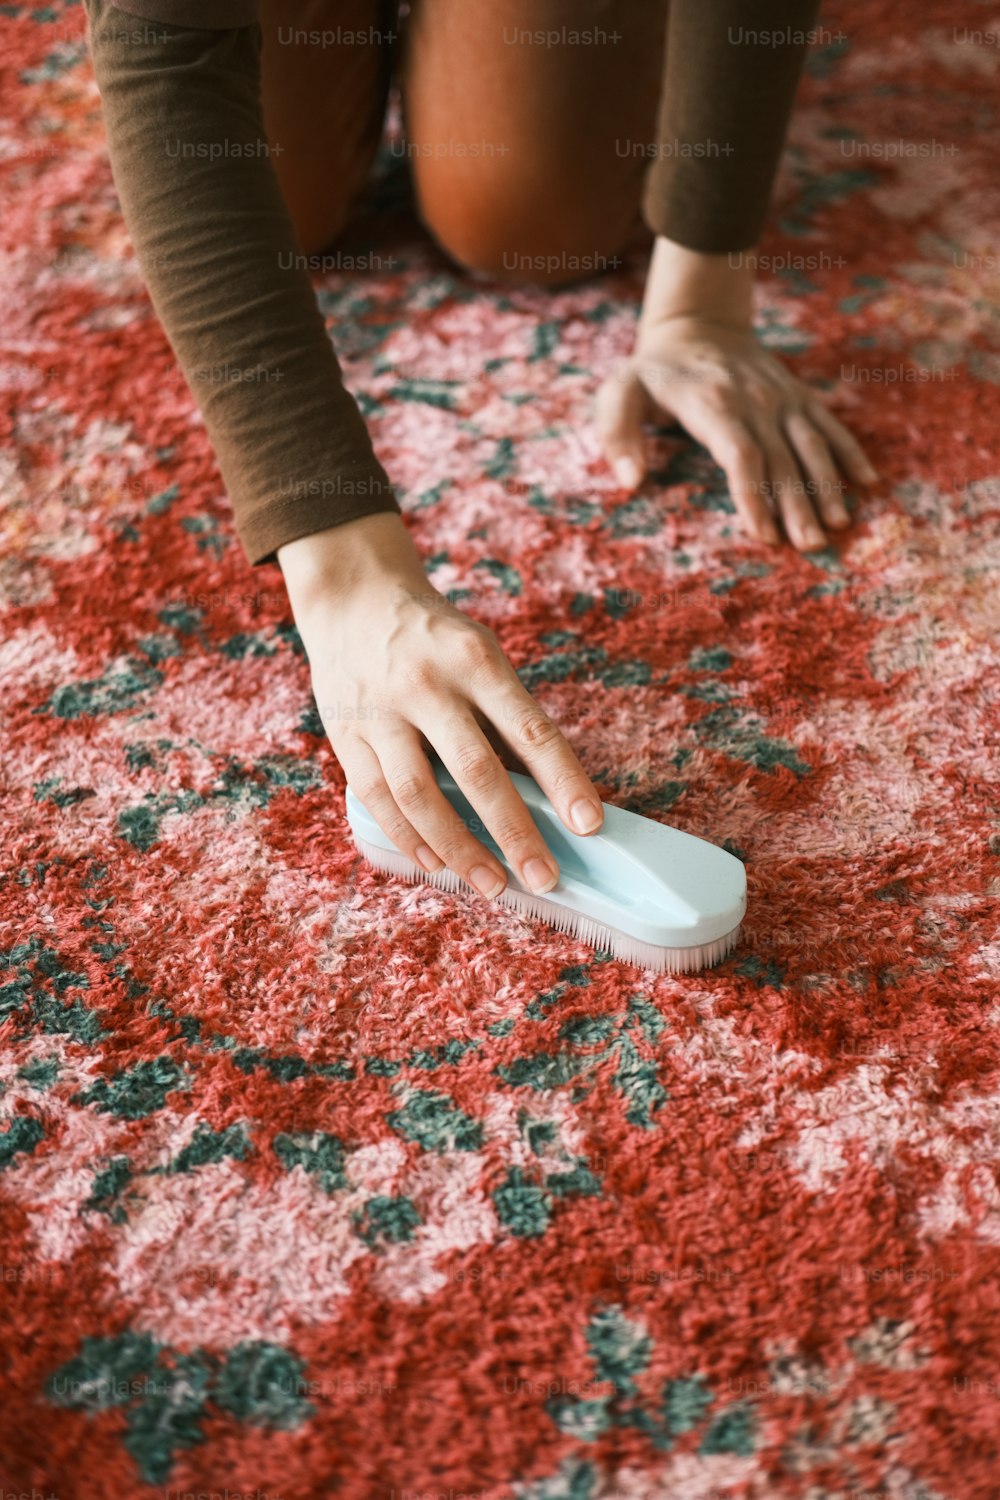 une personne agenouillée sur un tapis avec une brosse à la main